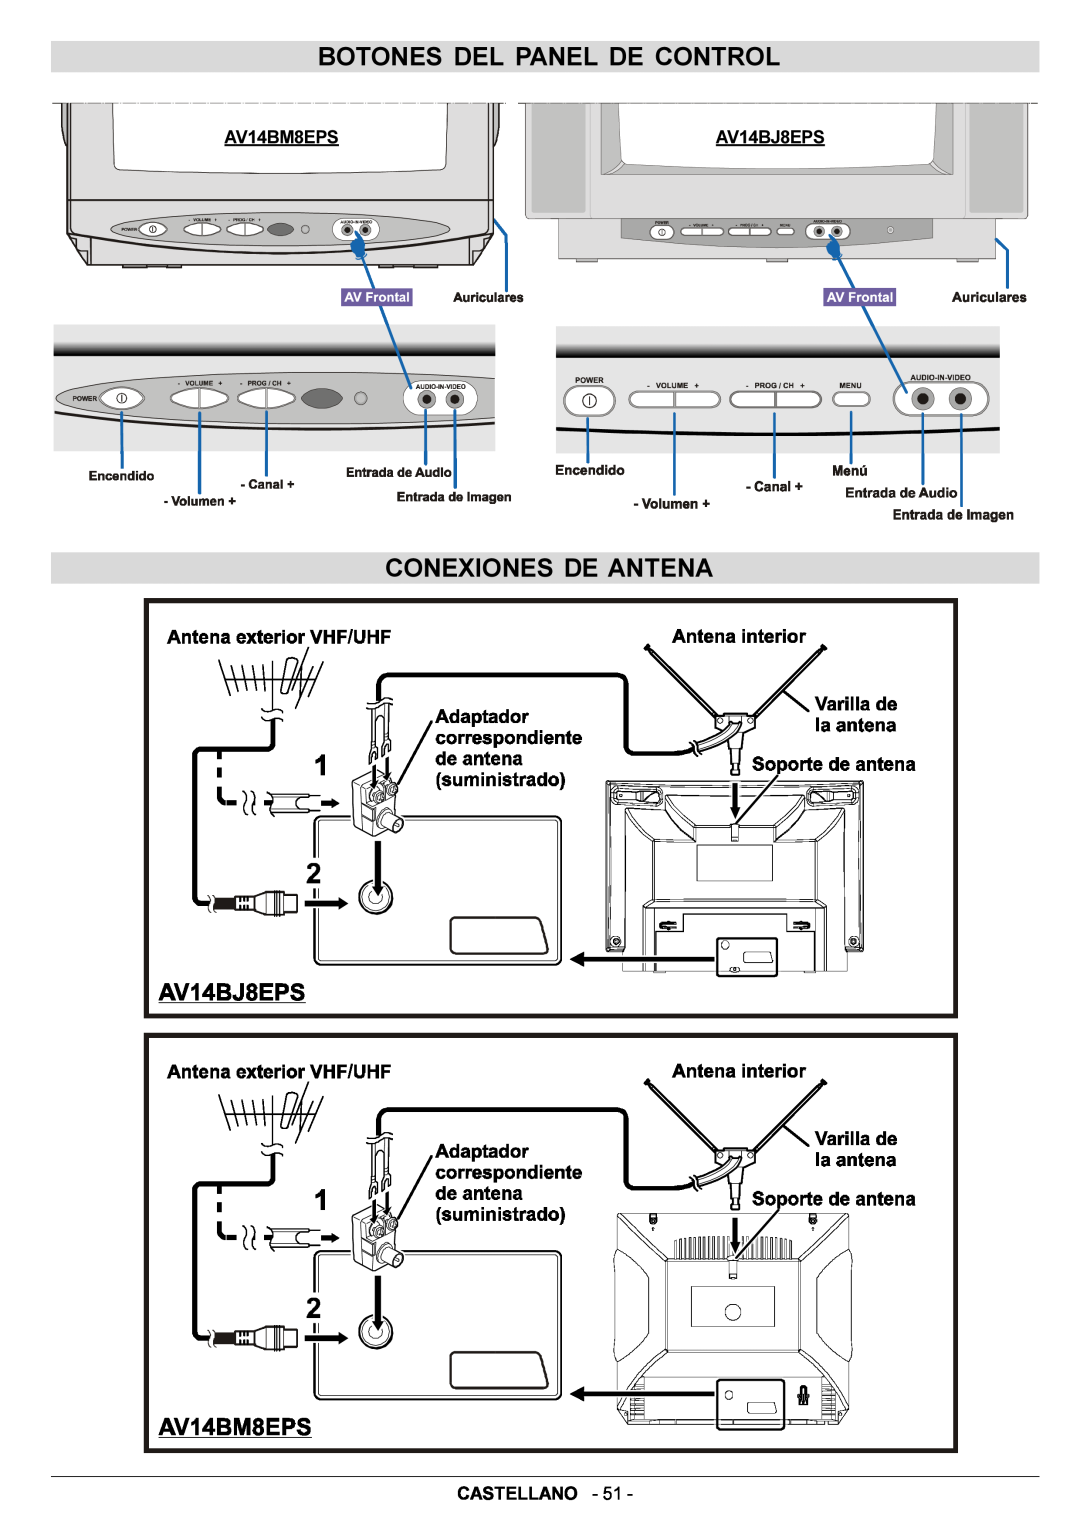 JVC AV14BJ8EPS manual Botones Del Panel De Control, Conexiones De Antena, Castellano 